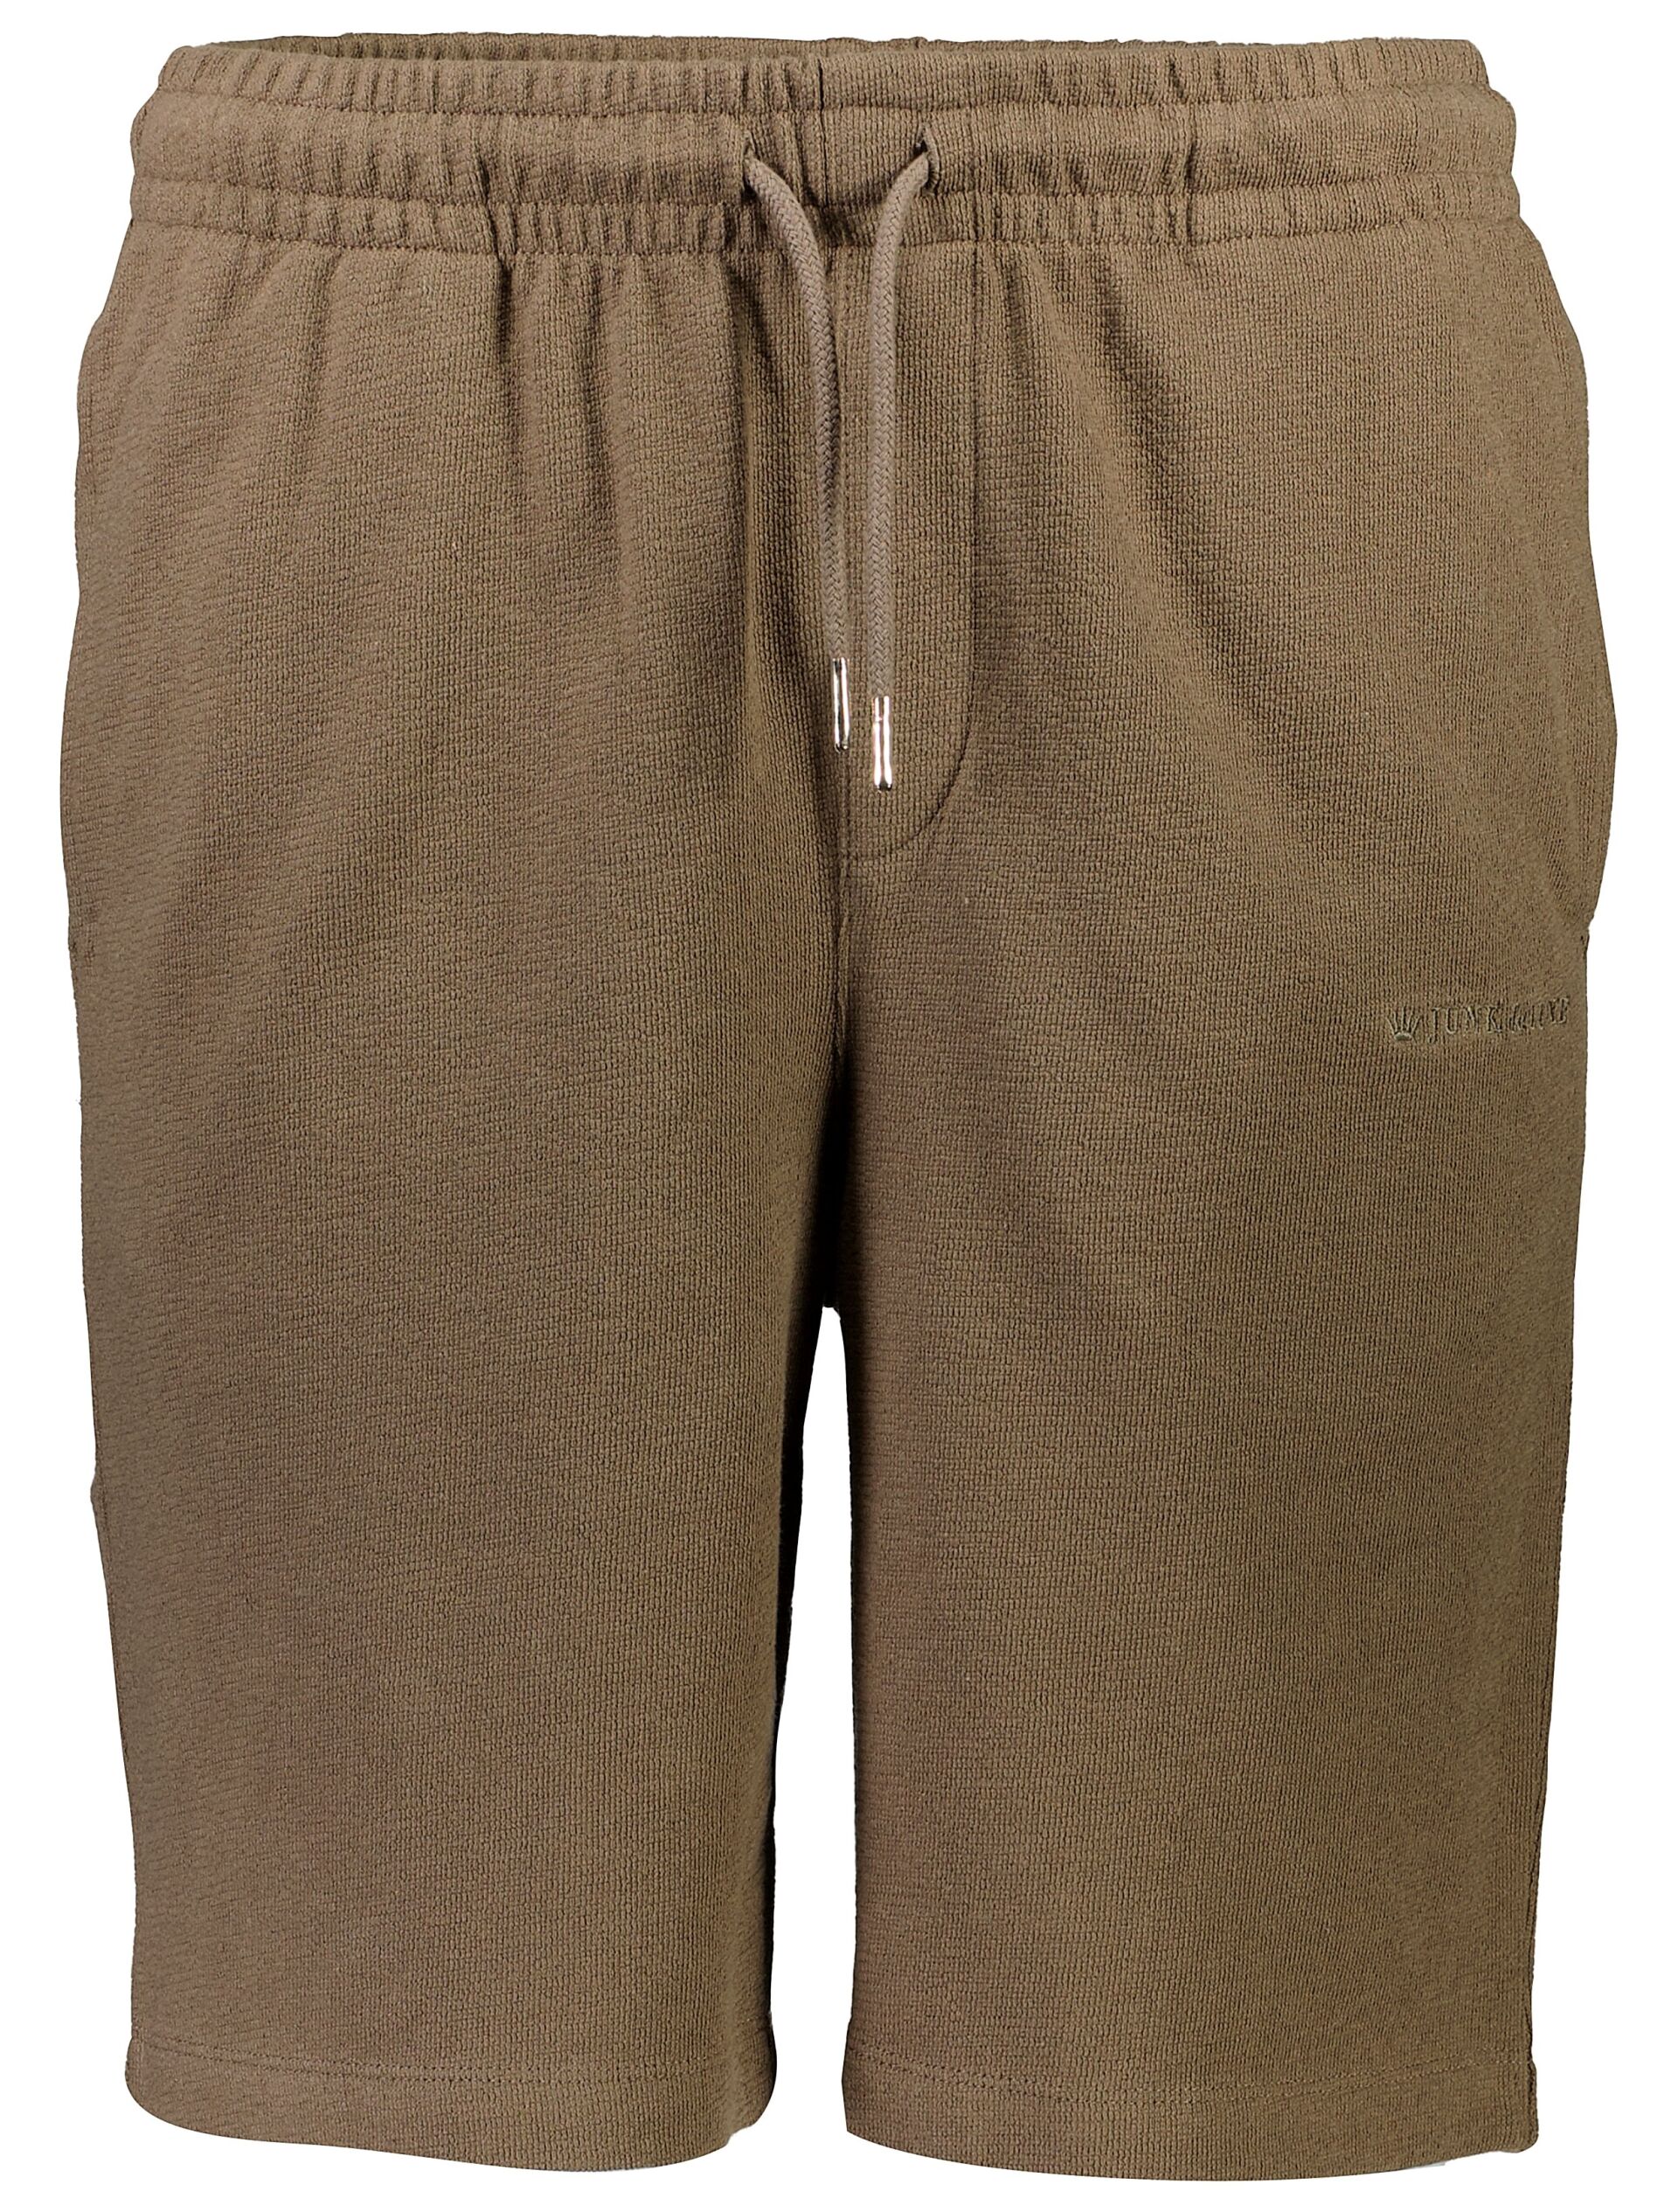 Casual shorts Casual shorts Brown 60-532040